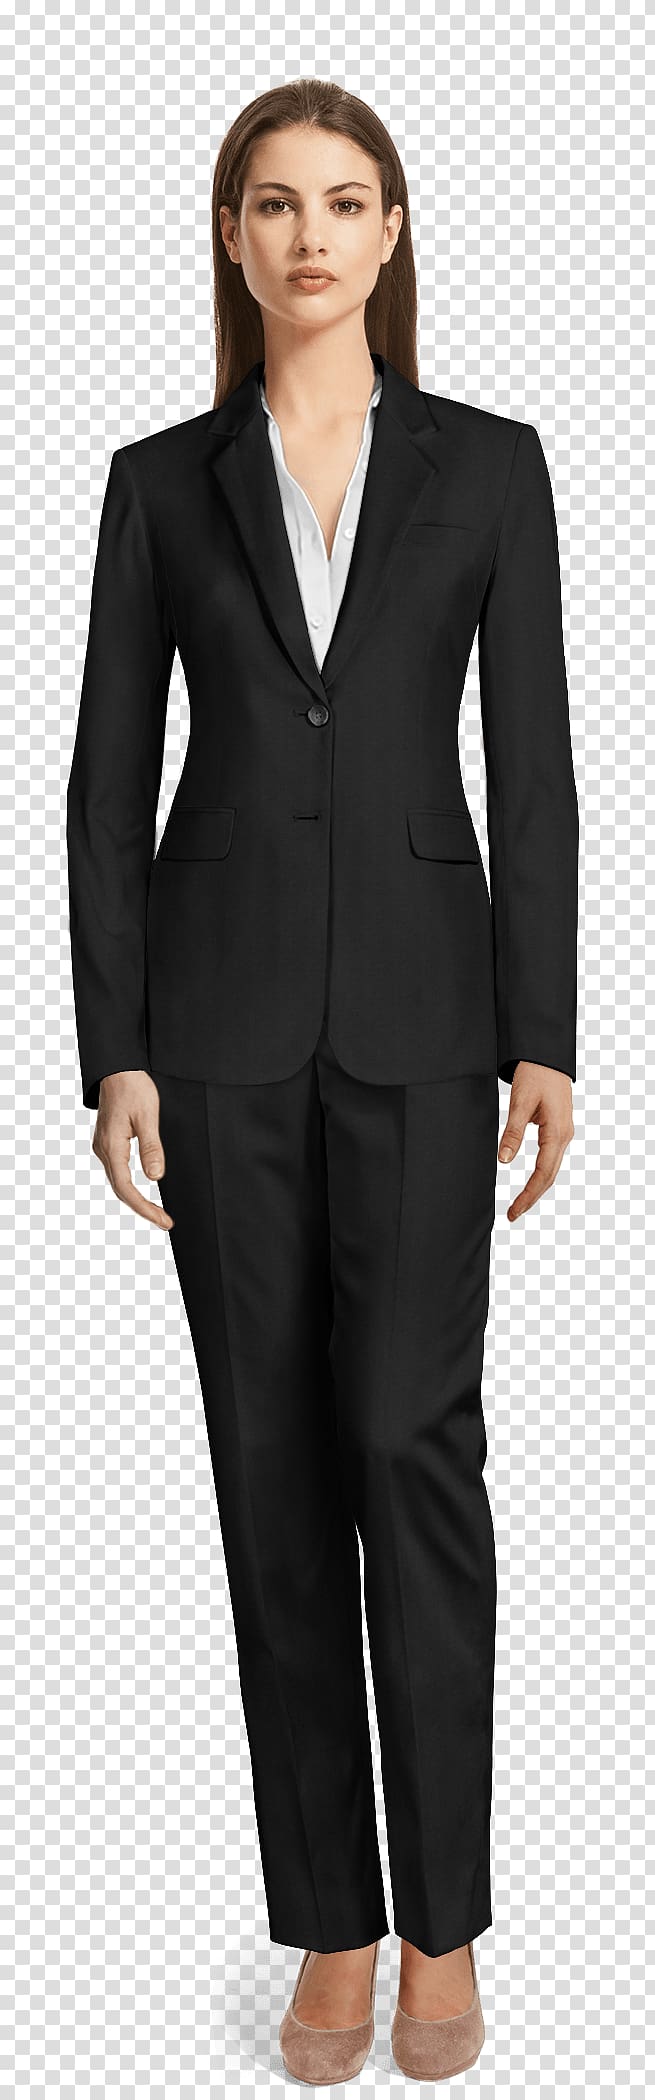 Tuxedo Pant Suits Jakkupuku Clothing, suit transparent background PNG clipart